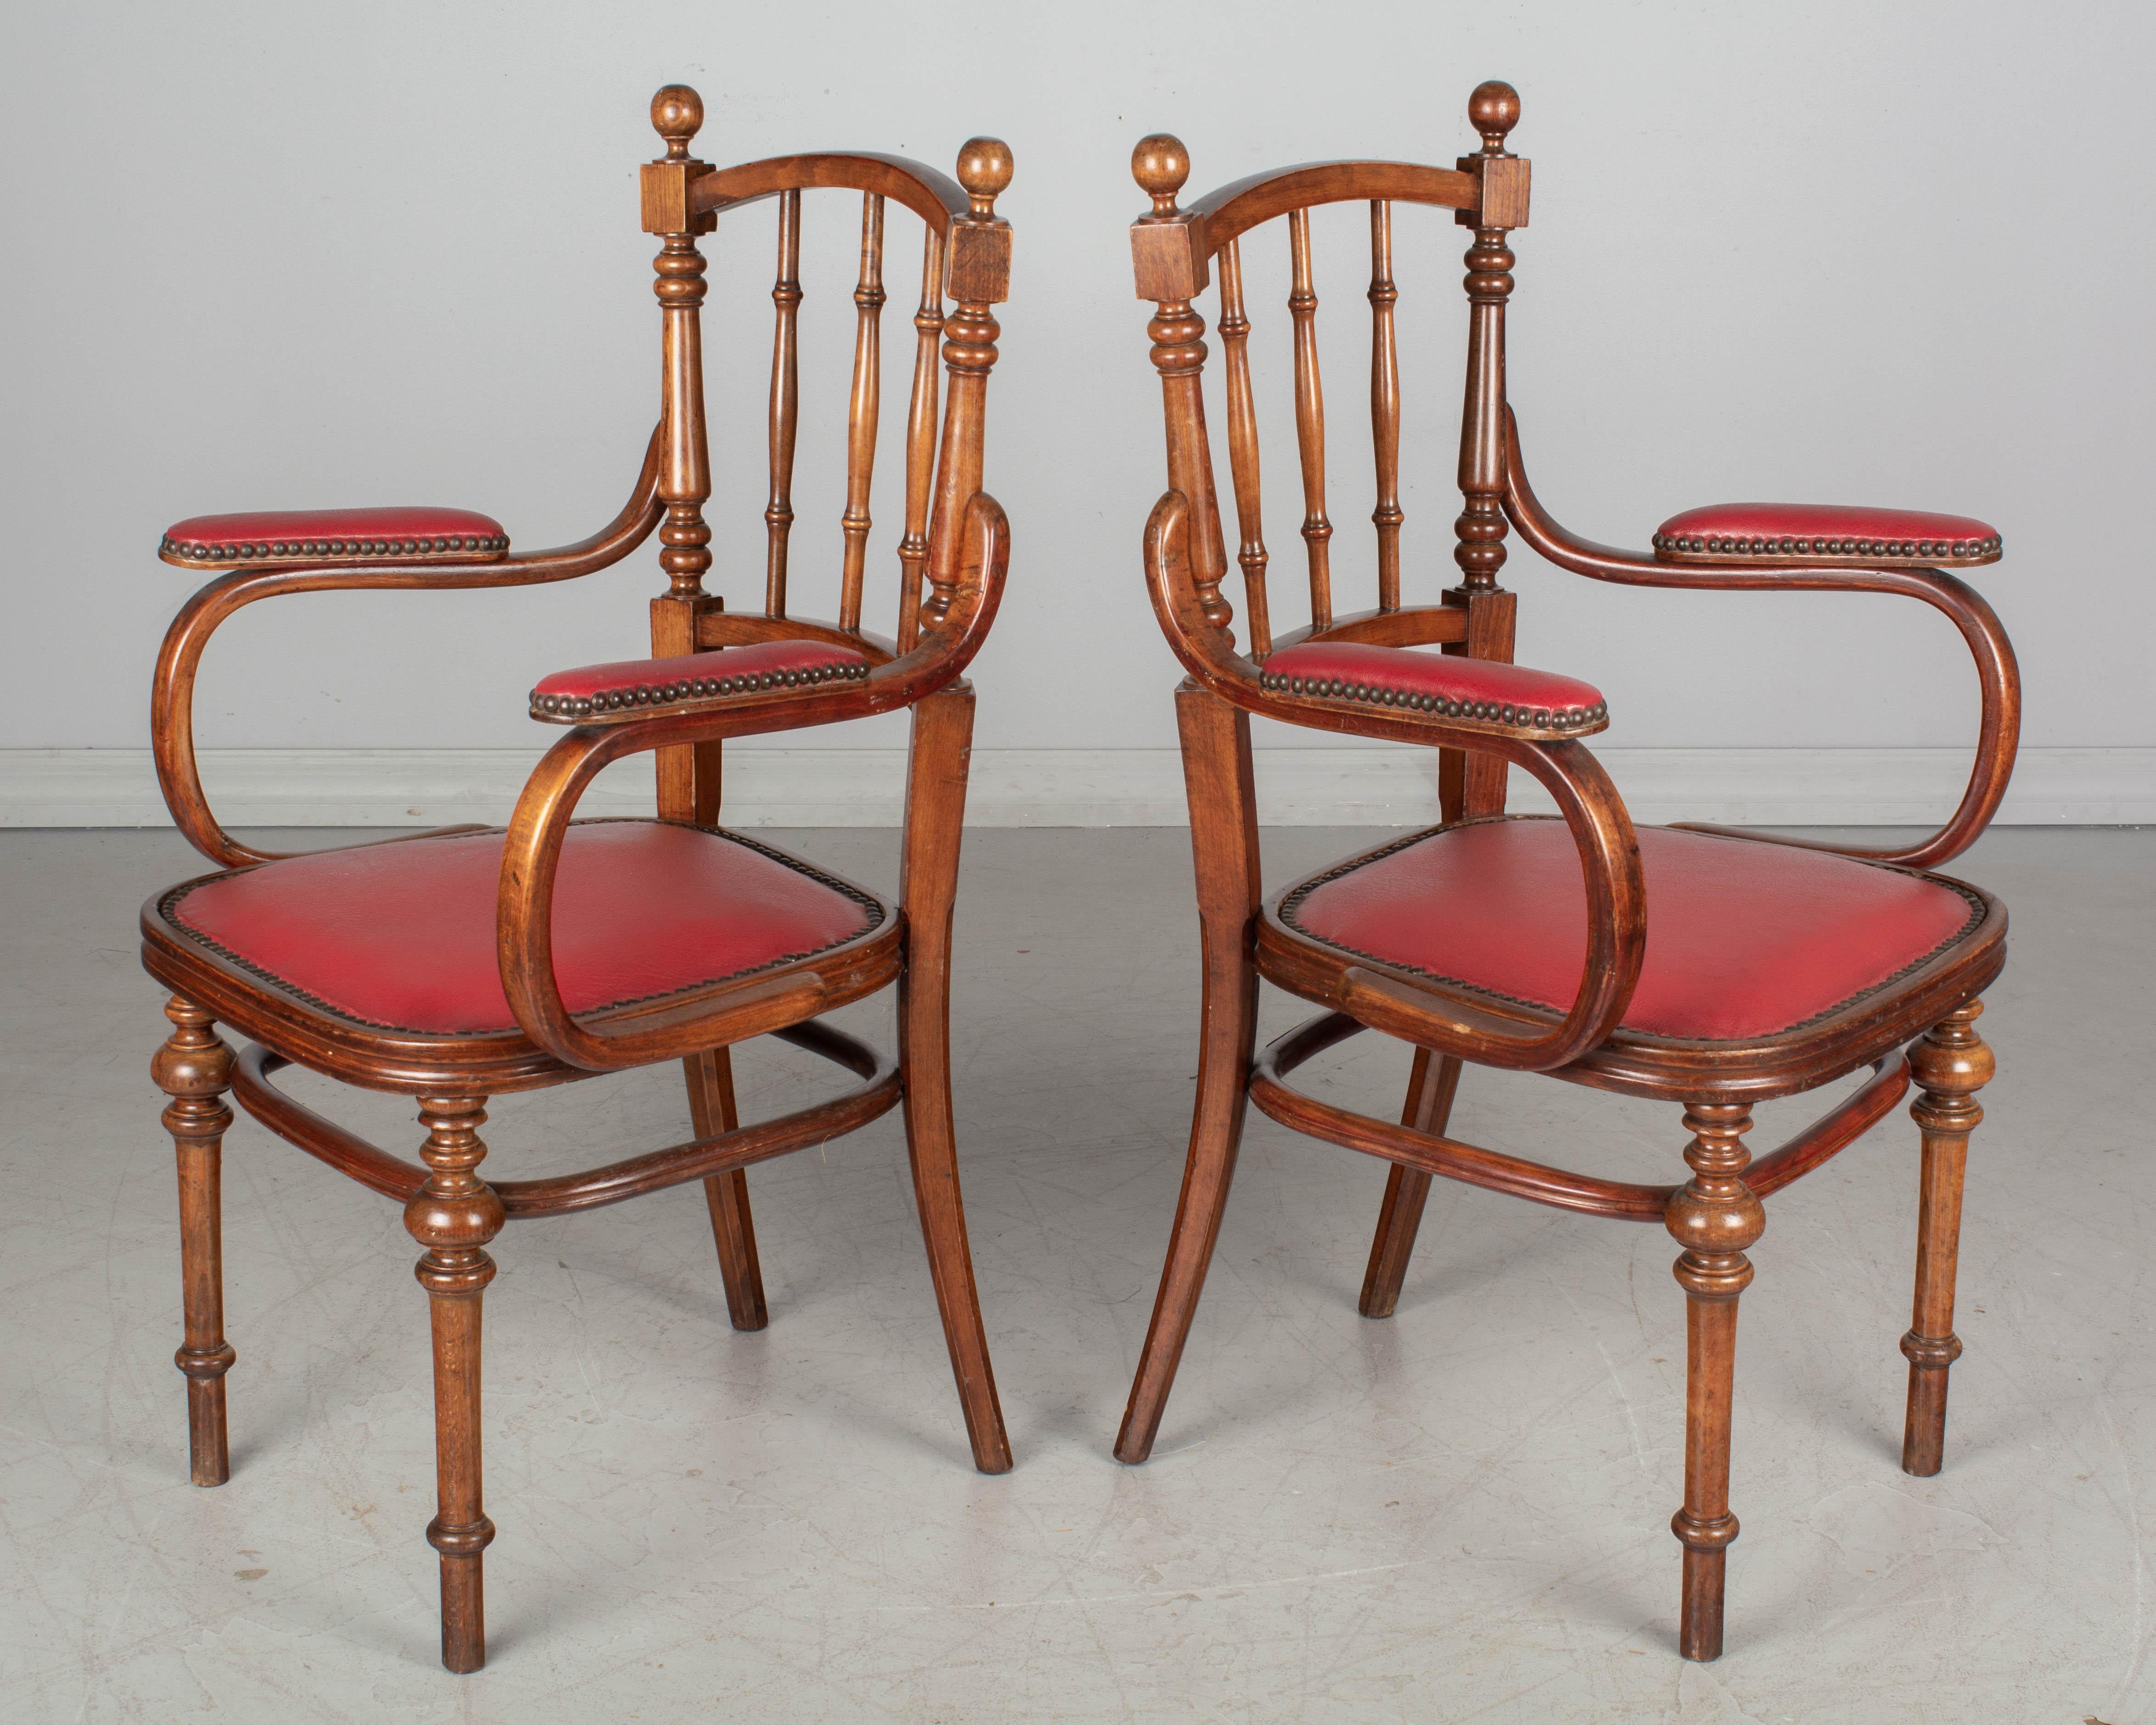 Ein Paar französische Bugholzsessel im Thonet-Stil aus Buchenholz mit gedrechselten Beinen und Spindelrücken. Originaler roter Vinylsitz und Armlehnen mit Nagelkopfverzierung.